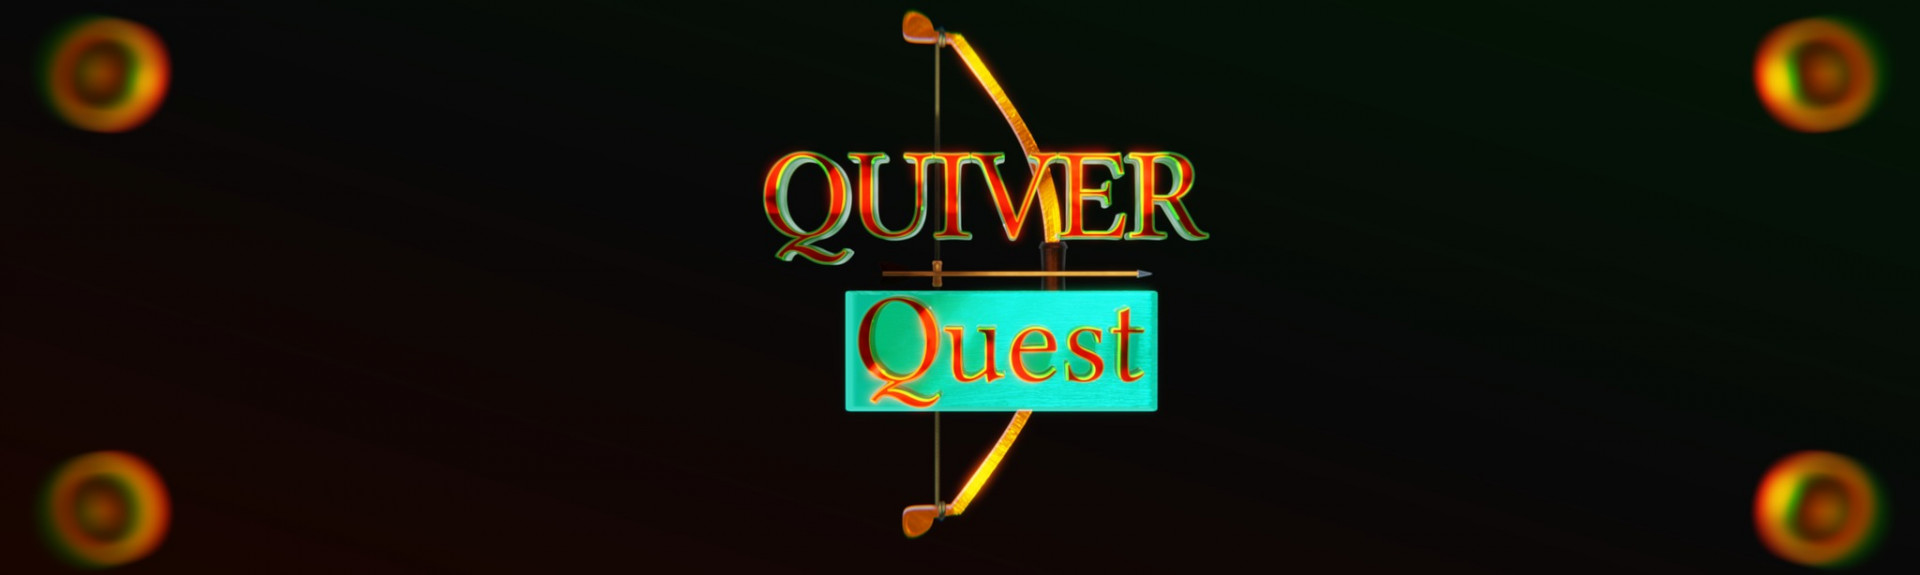 Quiver Quest